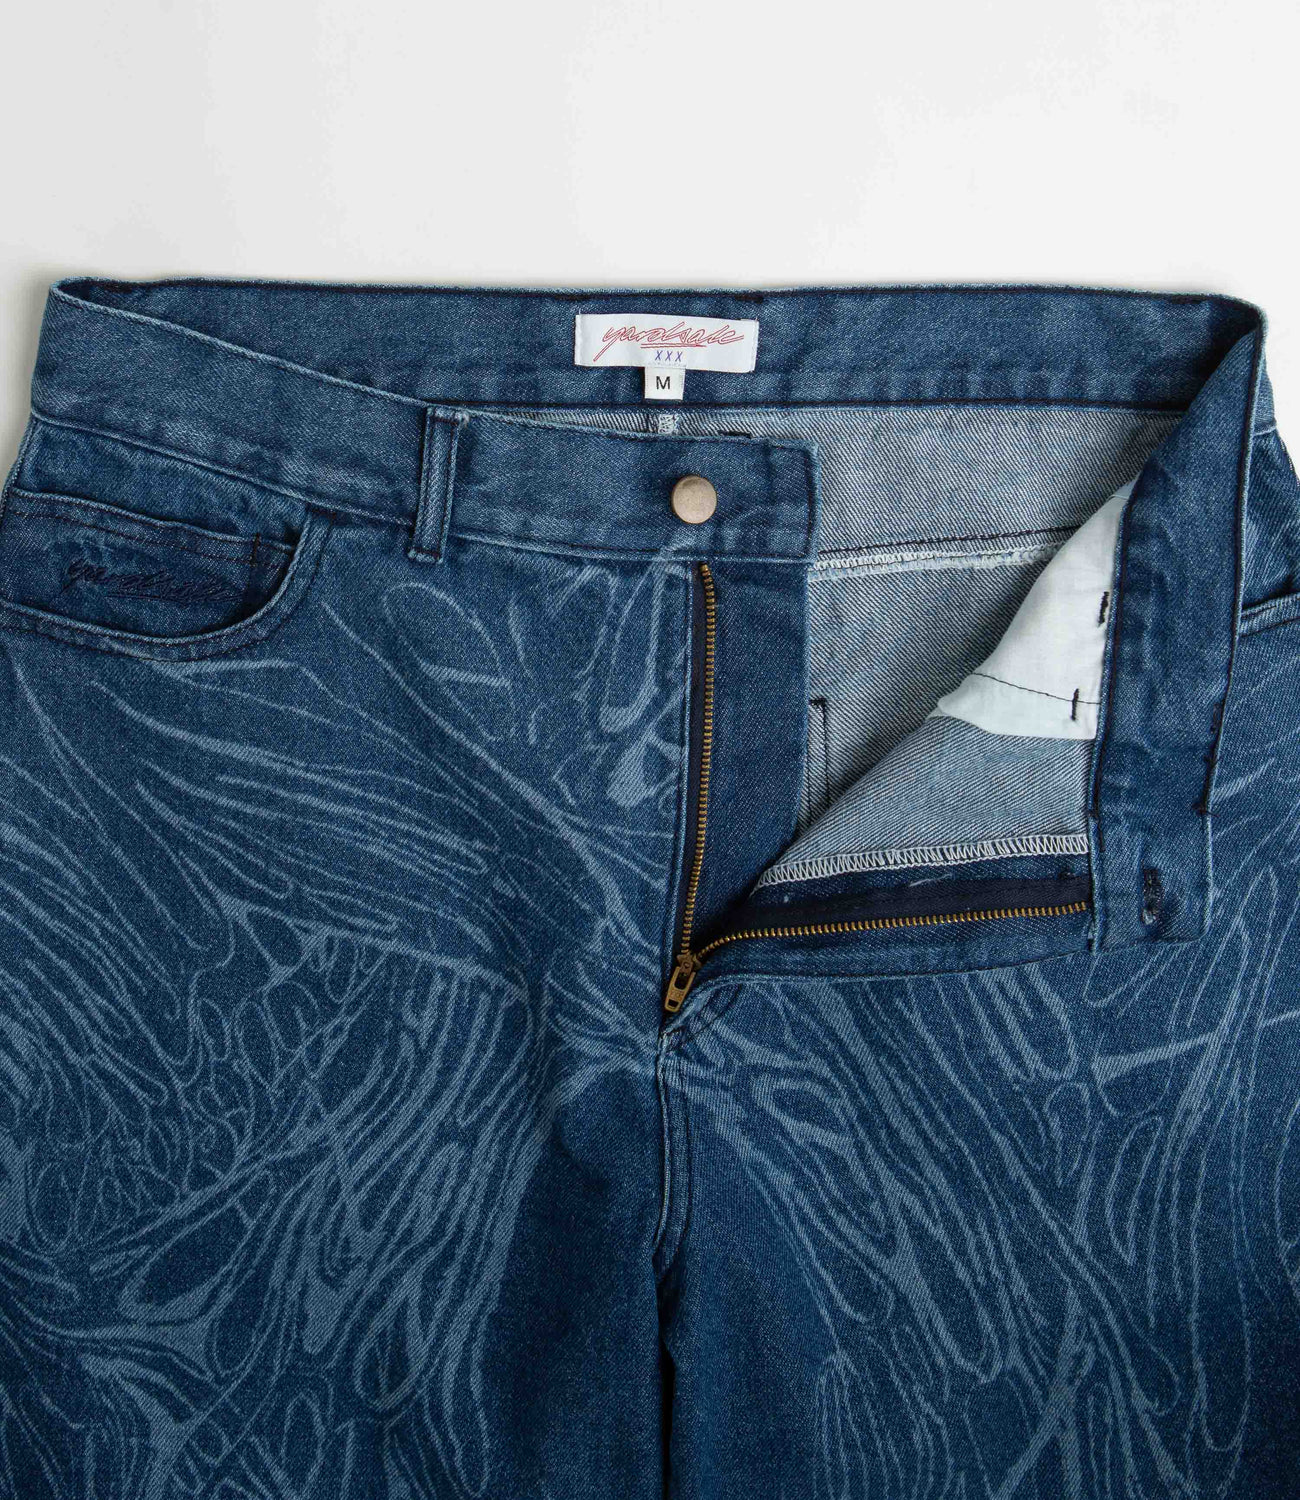 Yardsale Phantasy Ripper Jeans - Denim-